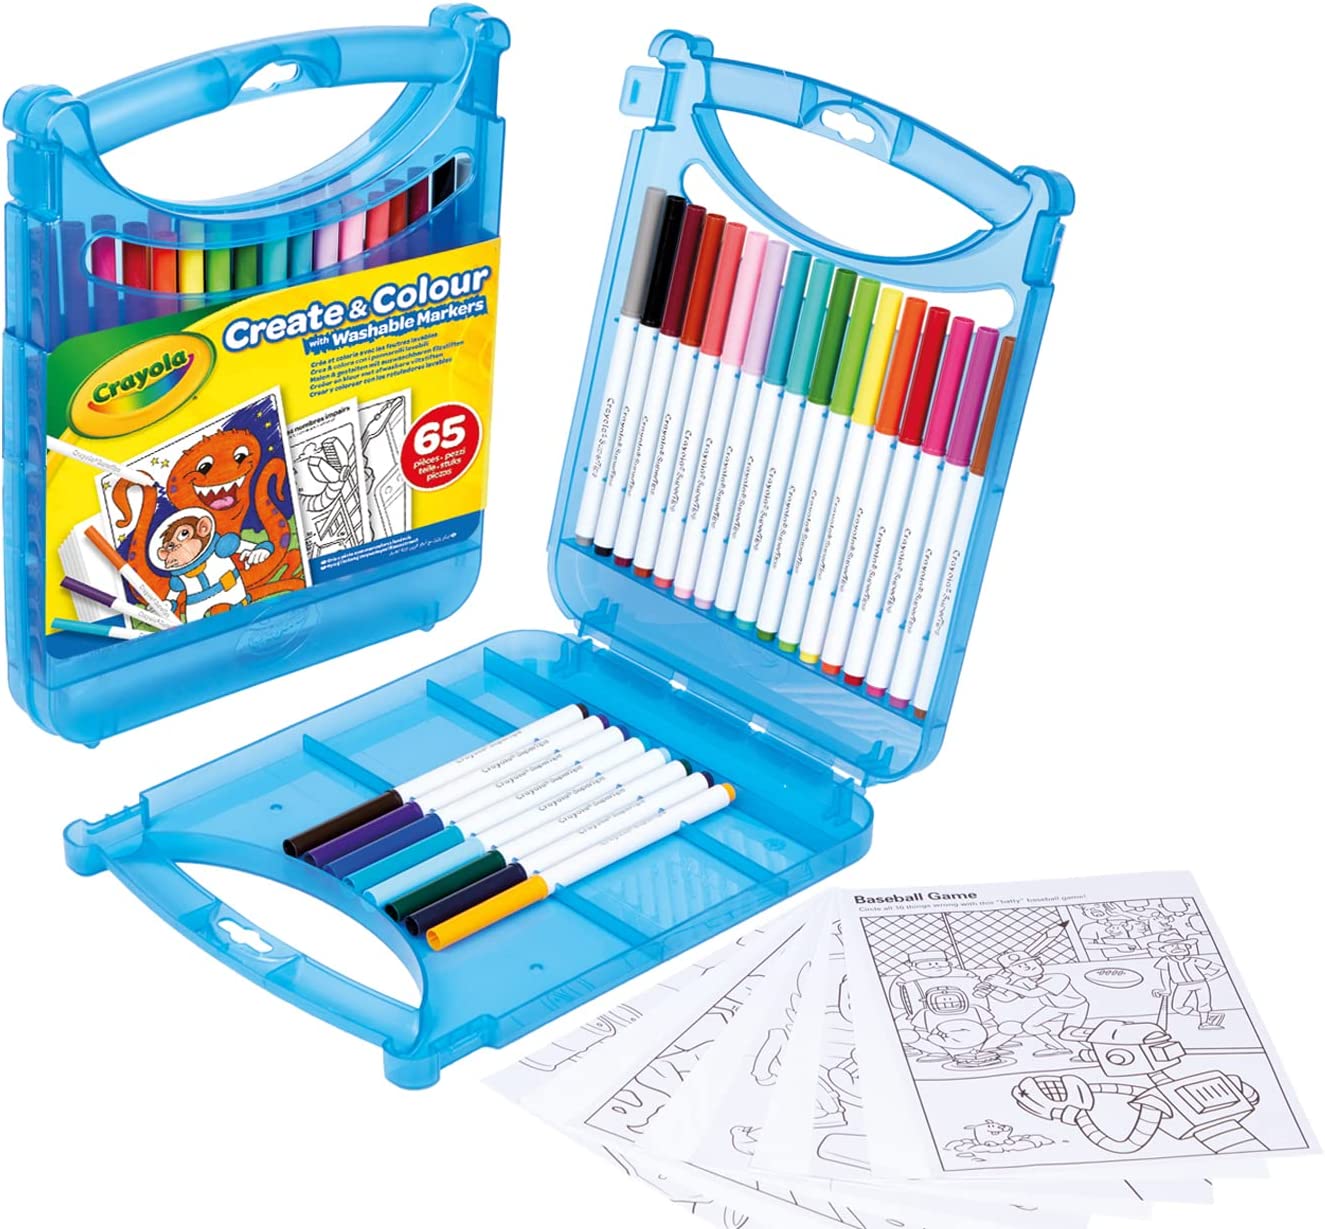 Crayola Supertips colour create case